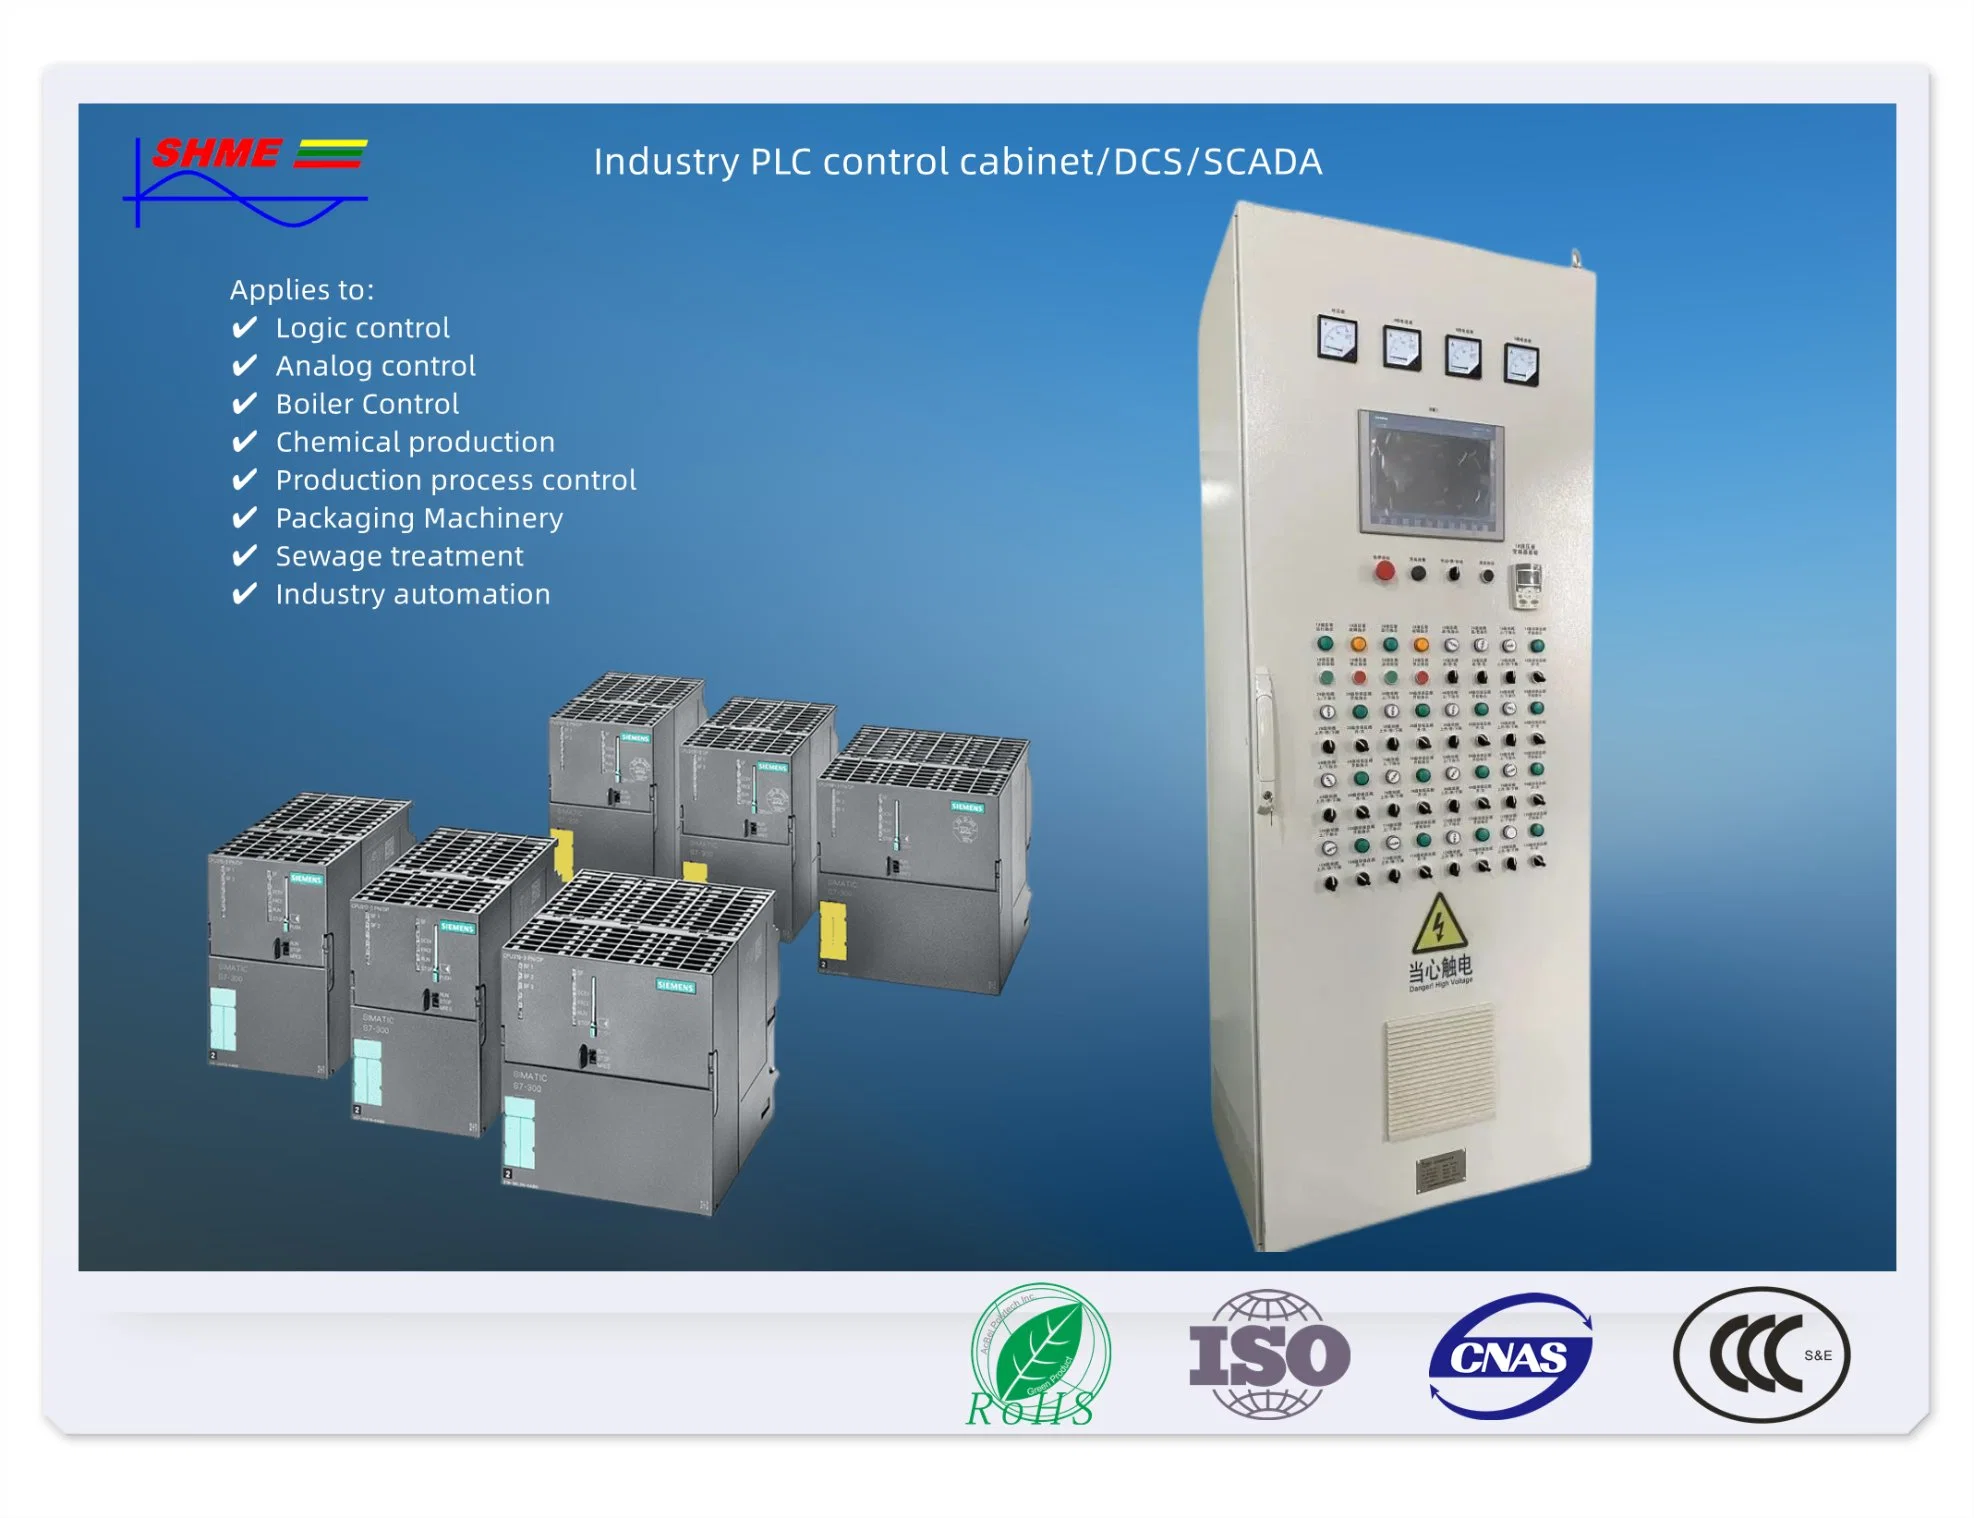 DCS-Steuerungssystem, SCADA-System, SPS-Steuerungssystem Wasseraufbereitung, Kraftwerk, Verpackungsmaschine